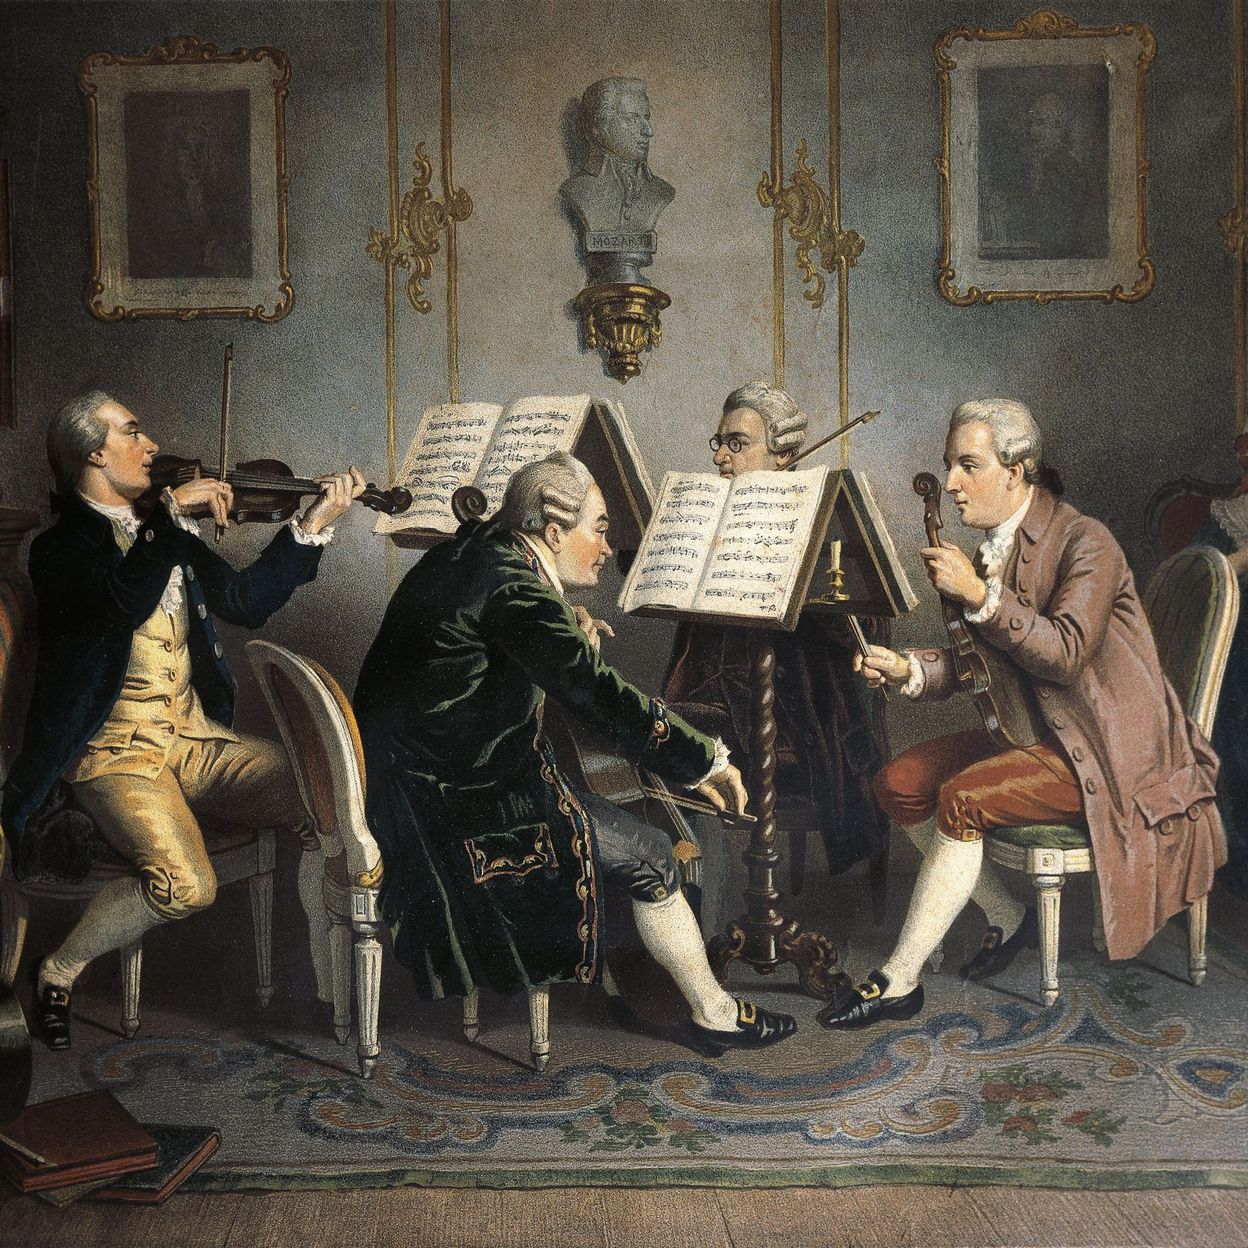 Оркестр на балу. Гайдн Йозеф квартет. Гайдн эпоха классицизма. Живопись 19 века музыканты струнный квартет. Йозеф Гайдн и Моцарт.